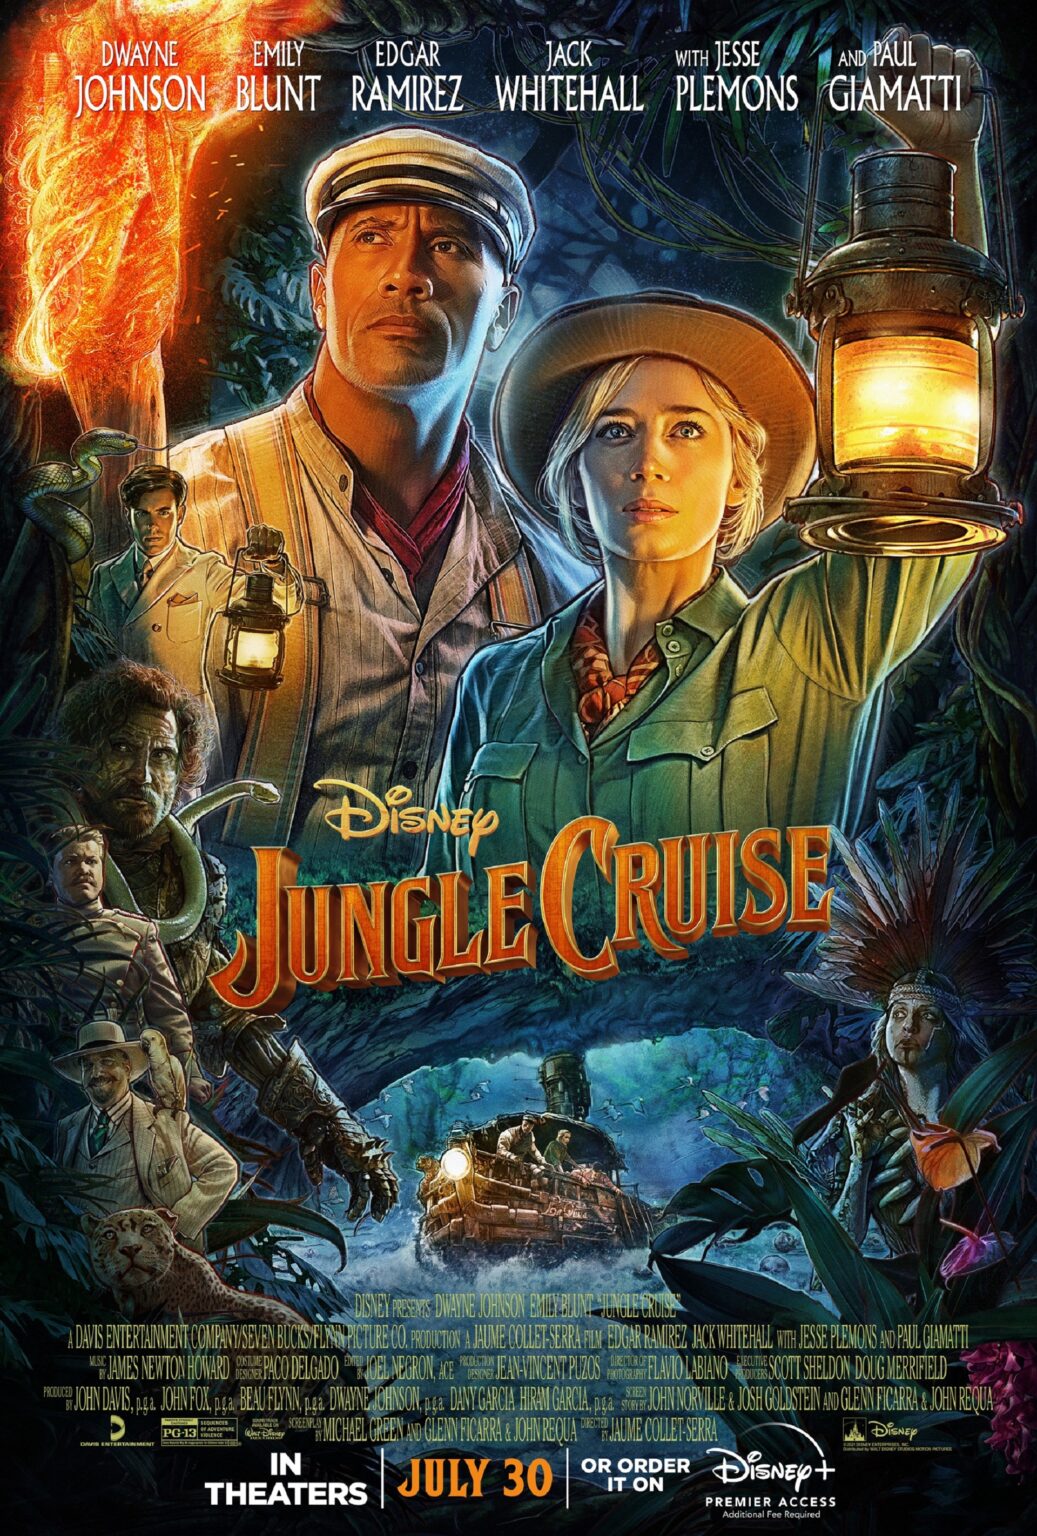 ¿Cuánto cuesta ver la película Jungle Cruise en Disney